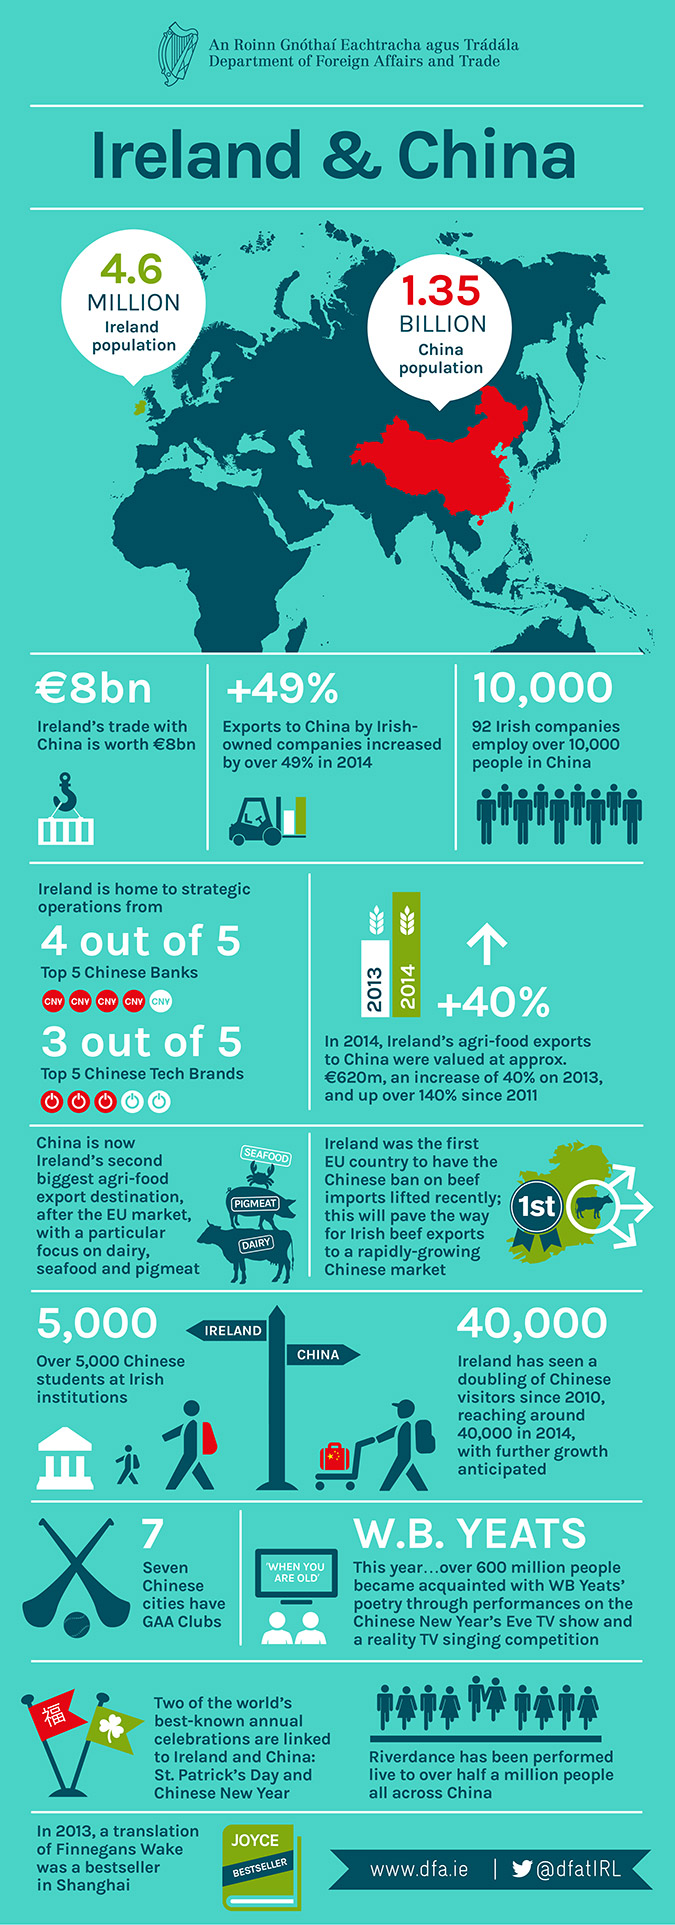 Ireland & China Infographic